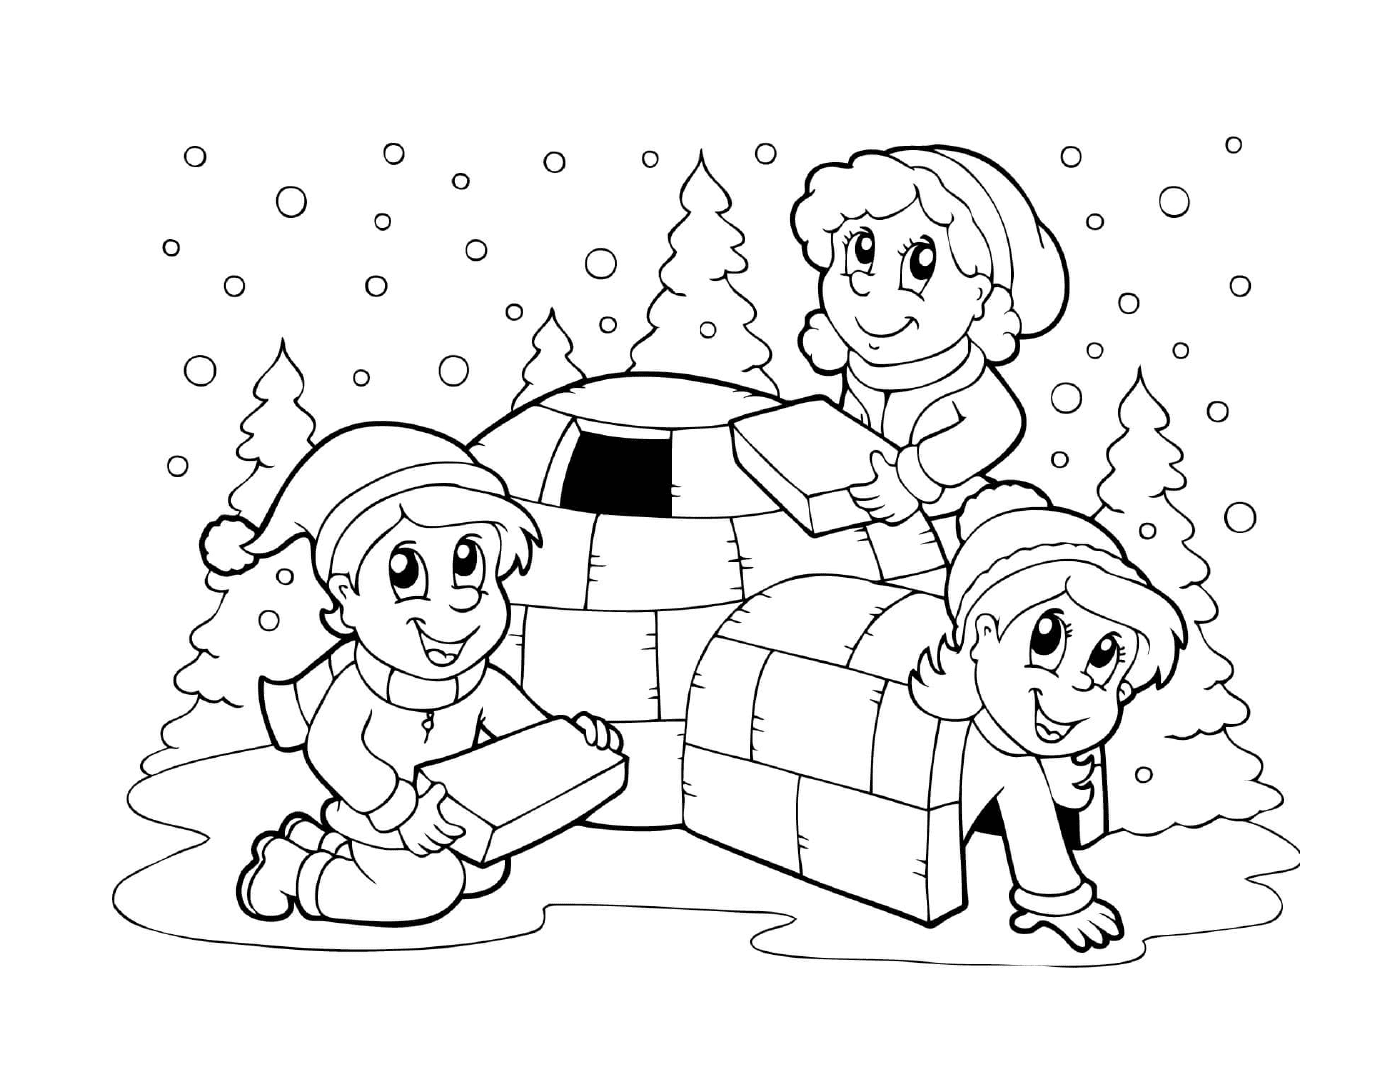   Enfants construisent un igloo en hiver 